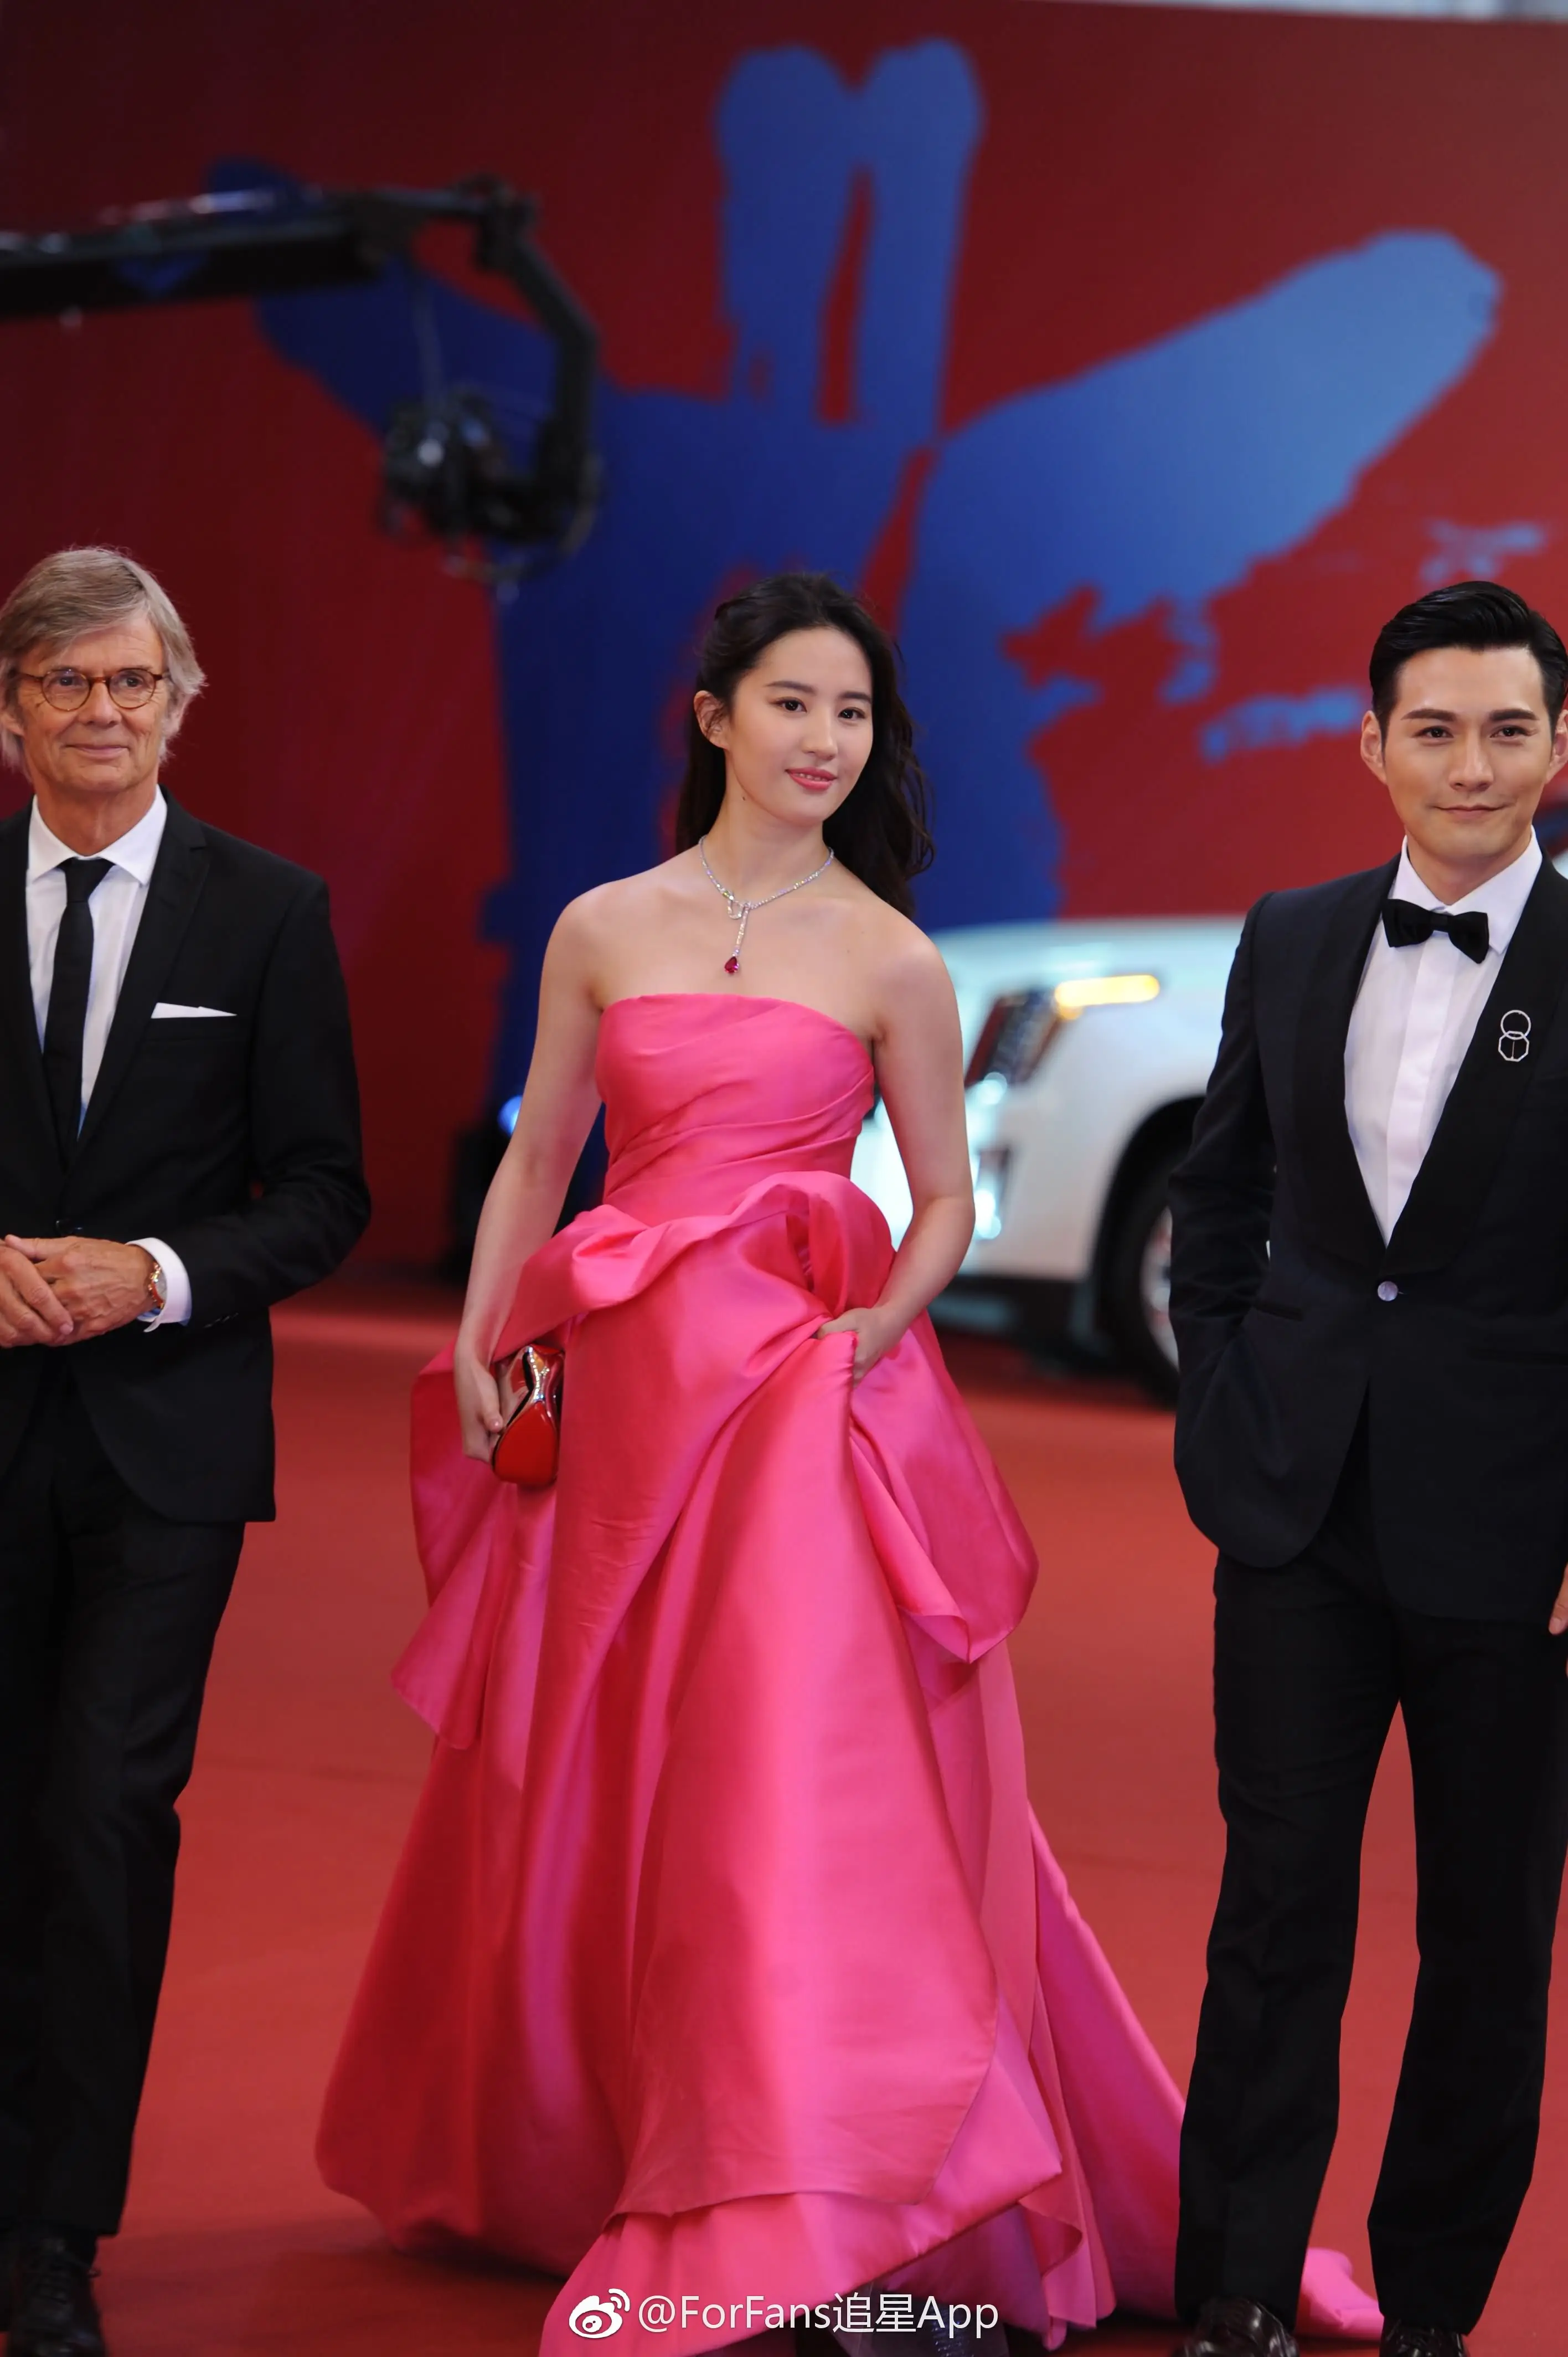 刘亦菲与《烽火芳菲》剧组走上海国际电影节红地毯